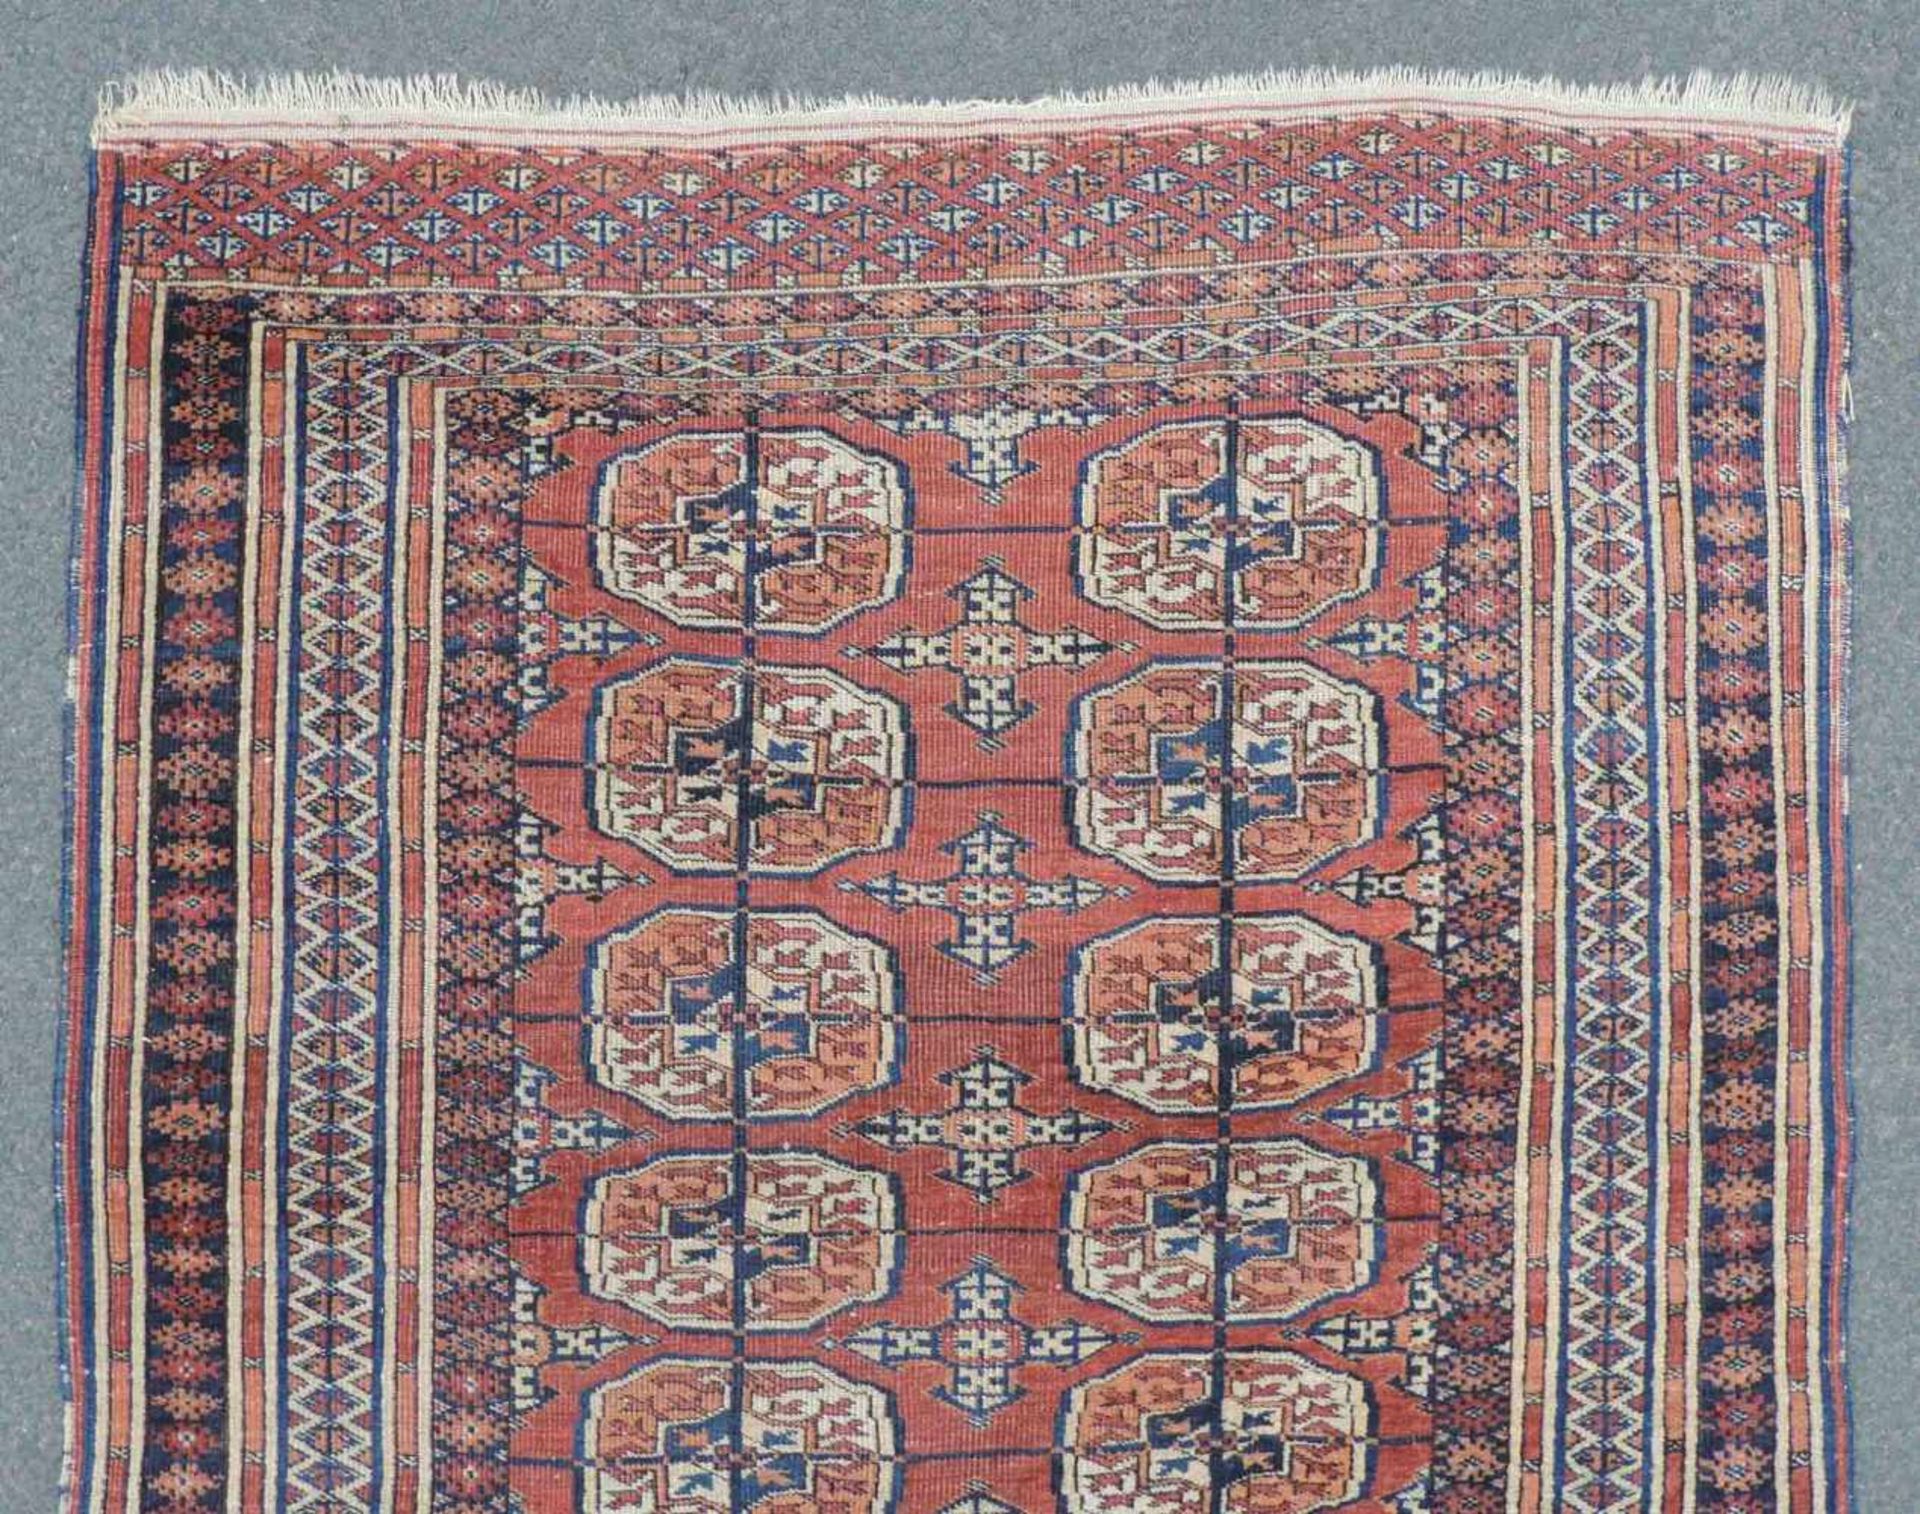 Turkoman Stammesteppich. Turkmenistan. Alt, um 1920. 148 cm x 107 cm. Handgeknüpft. Wolle auf Wolle. - Image 3 of 6